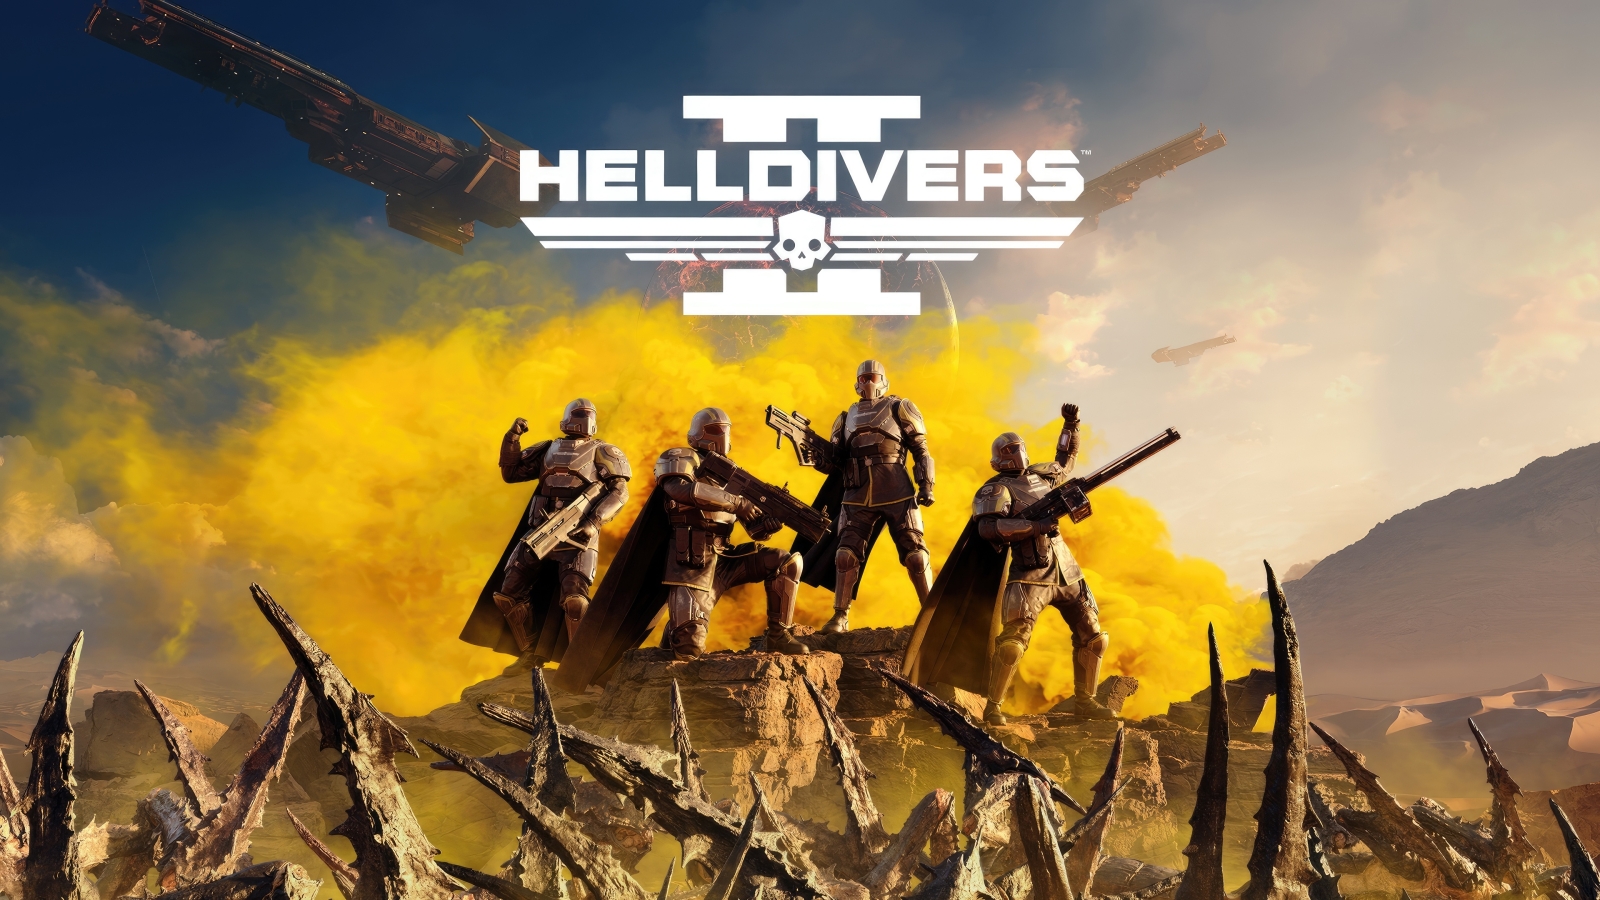 😏 Helldivers 2 — у Arrowhead працює людина на посаді Ігрового Майстра, який керує перебігом подій у грі